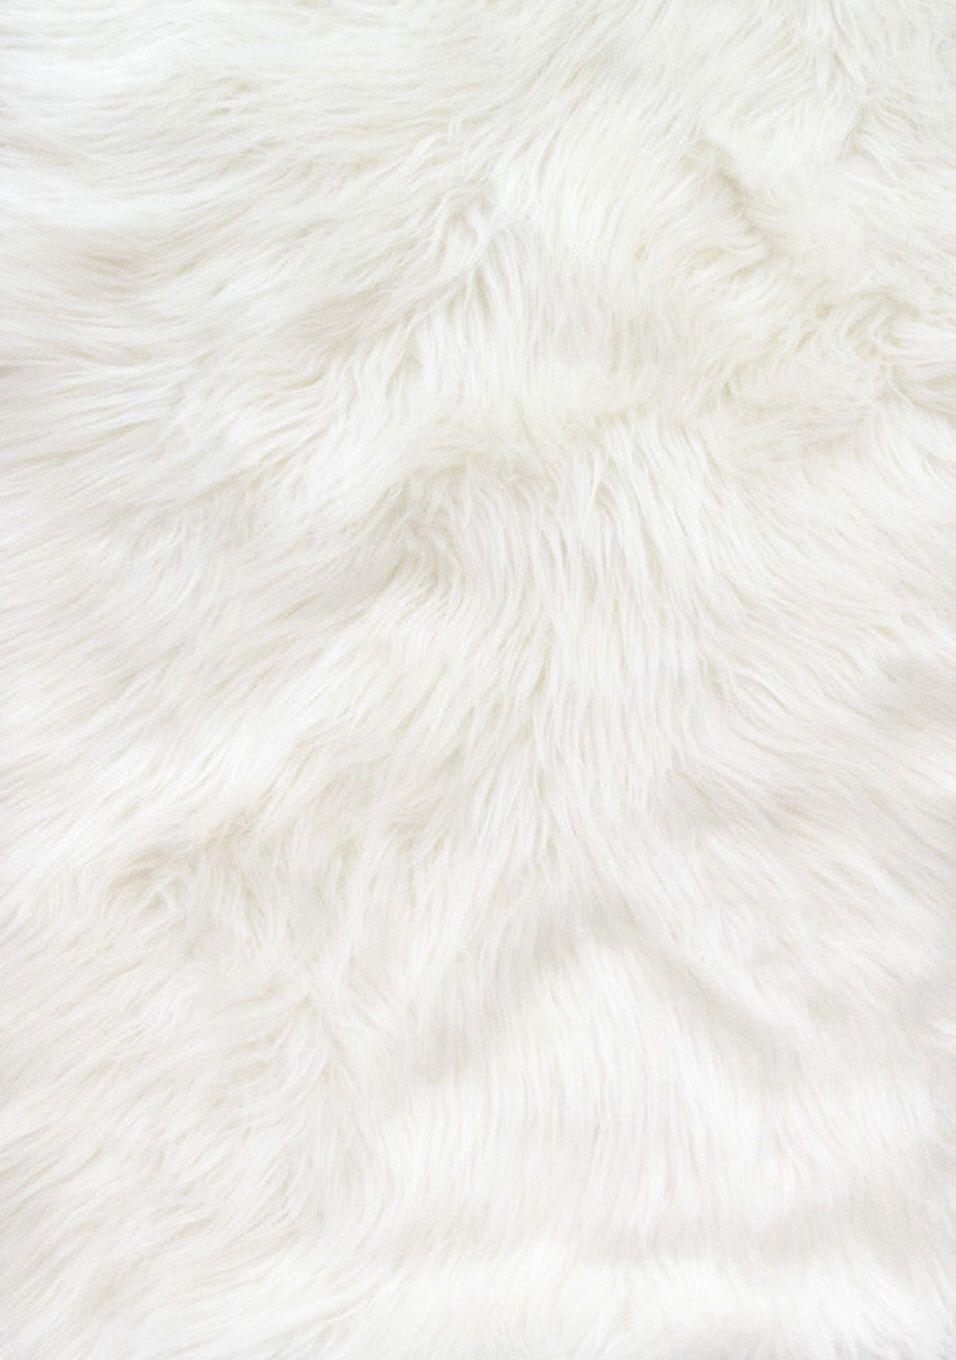 White Fur Wallpapers - Top Những Hình Ảnh Đẹp